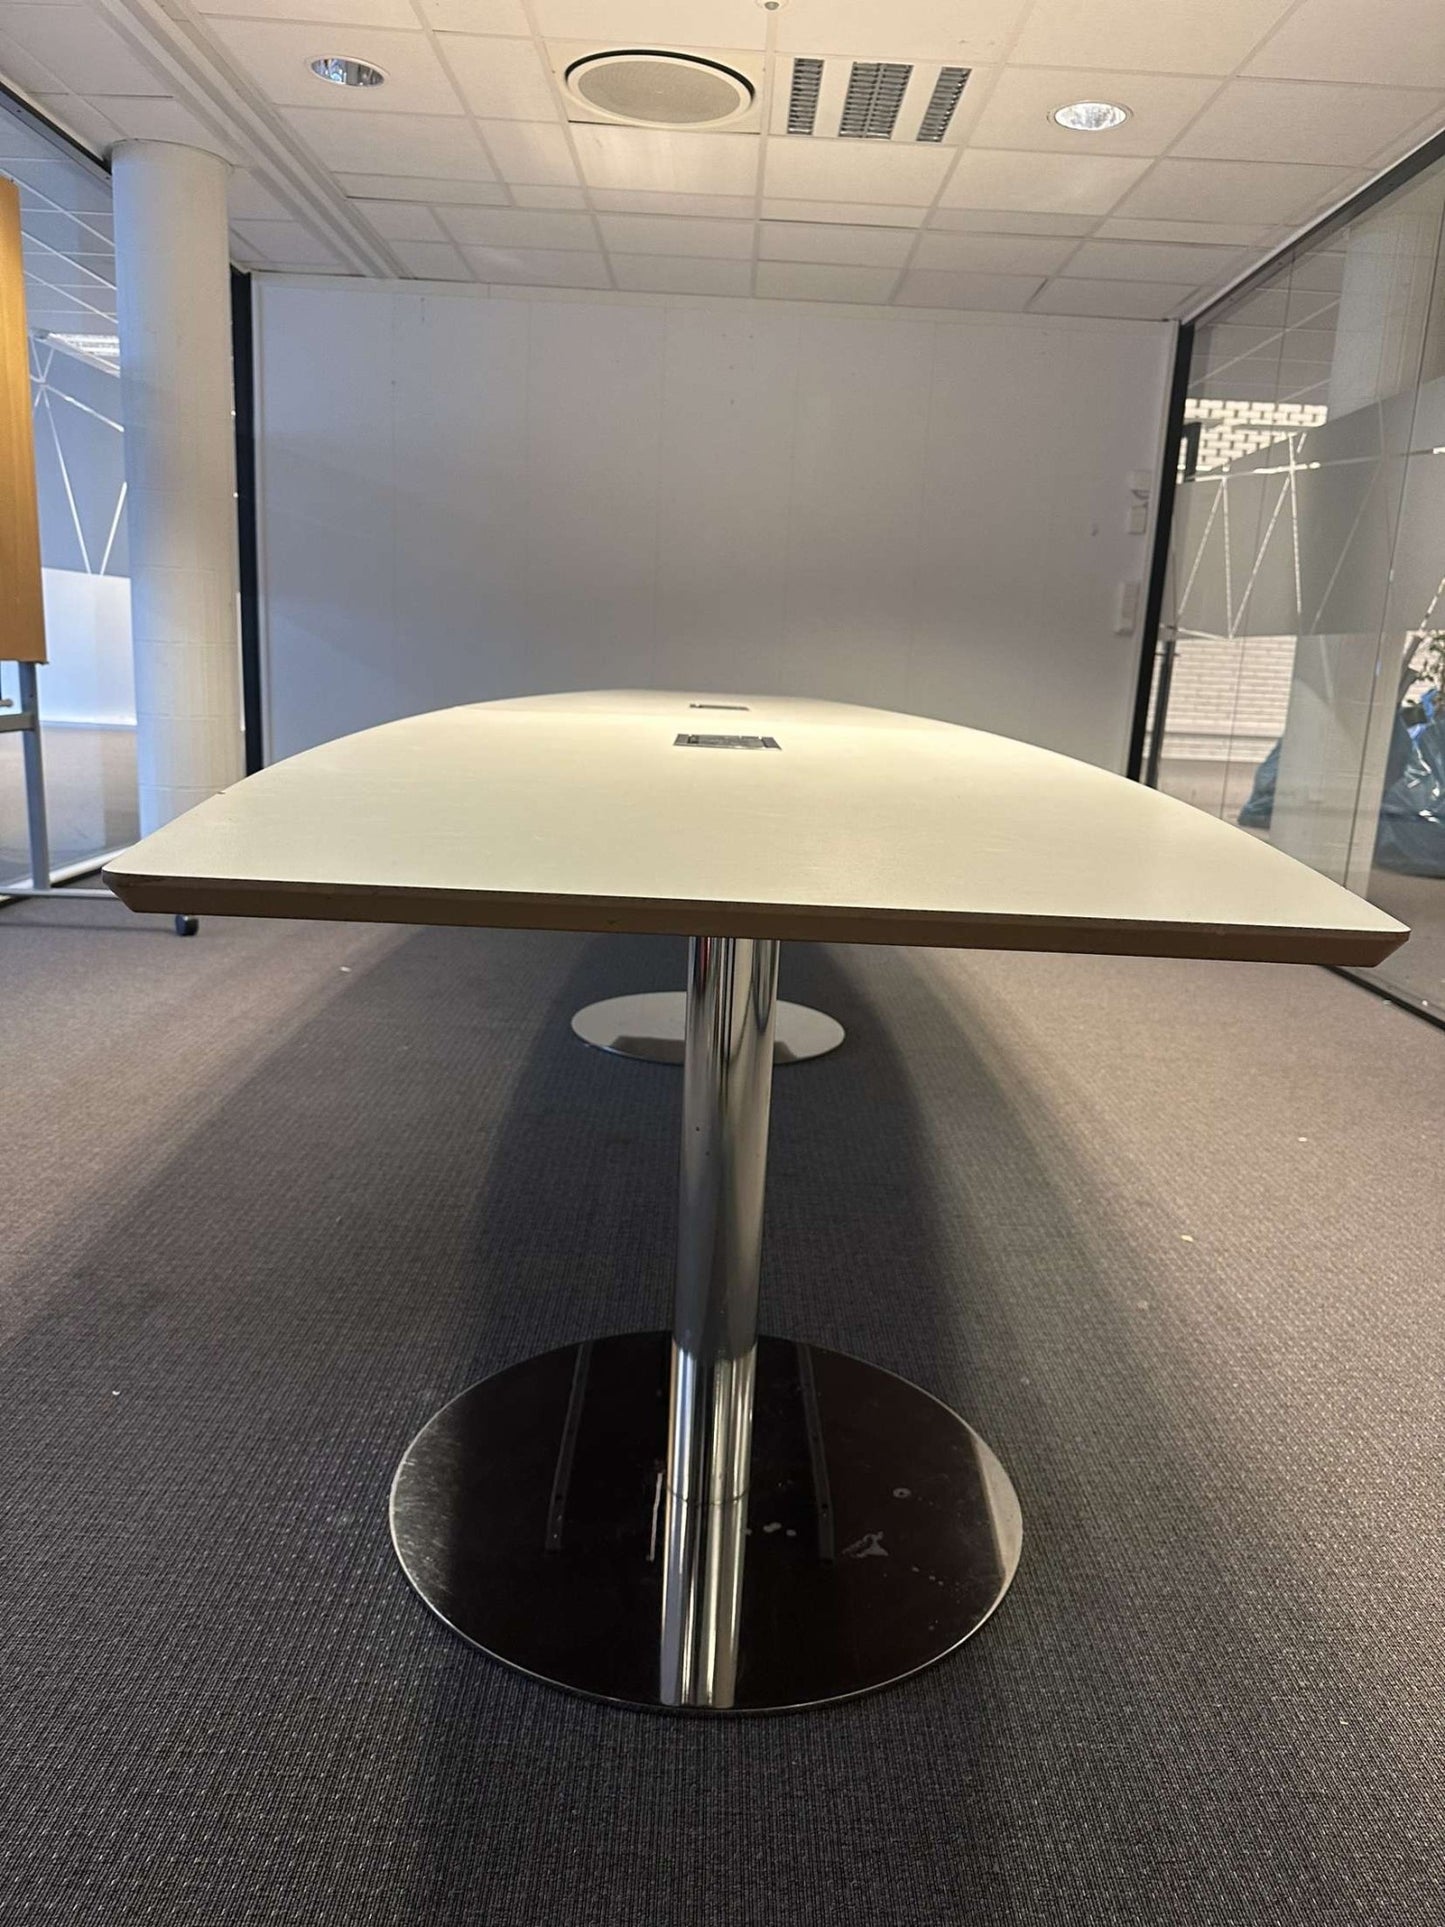 Nyrenset | Edsbyn møtebord i hvit/krom, 4,8 meter